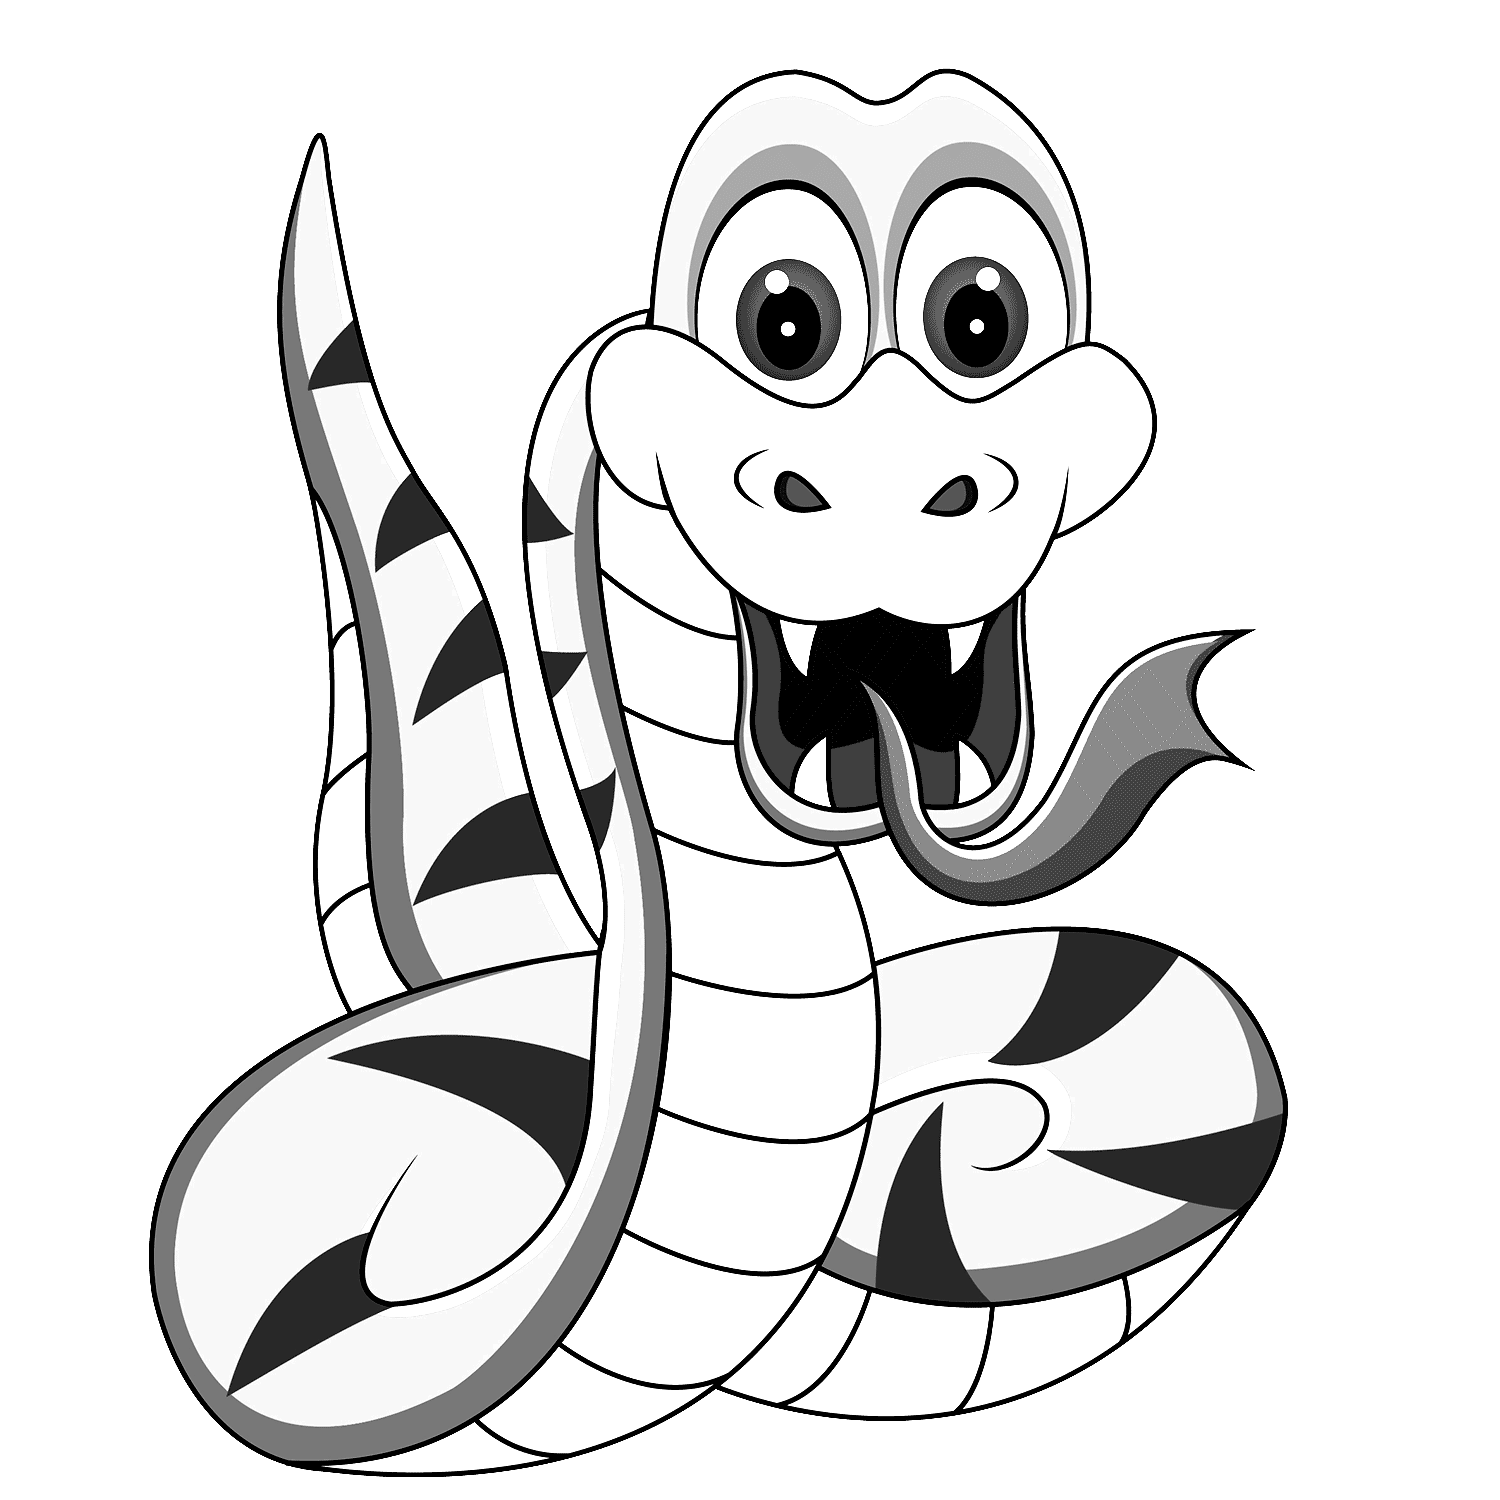 Serpente da colorare per bambini